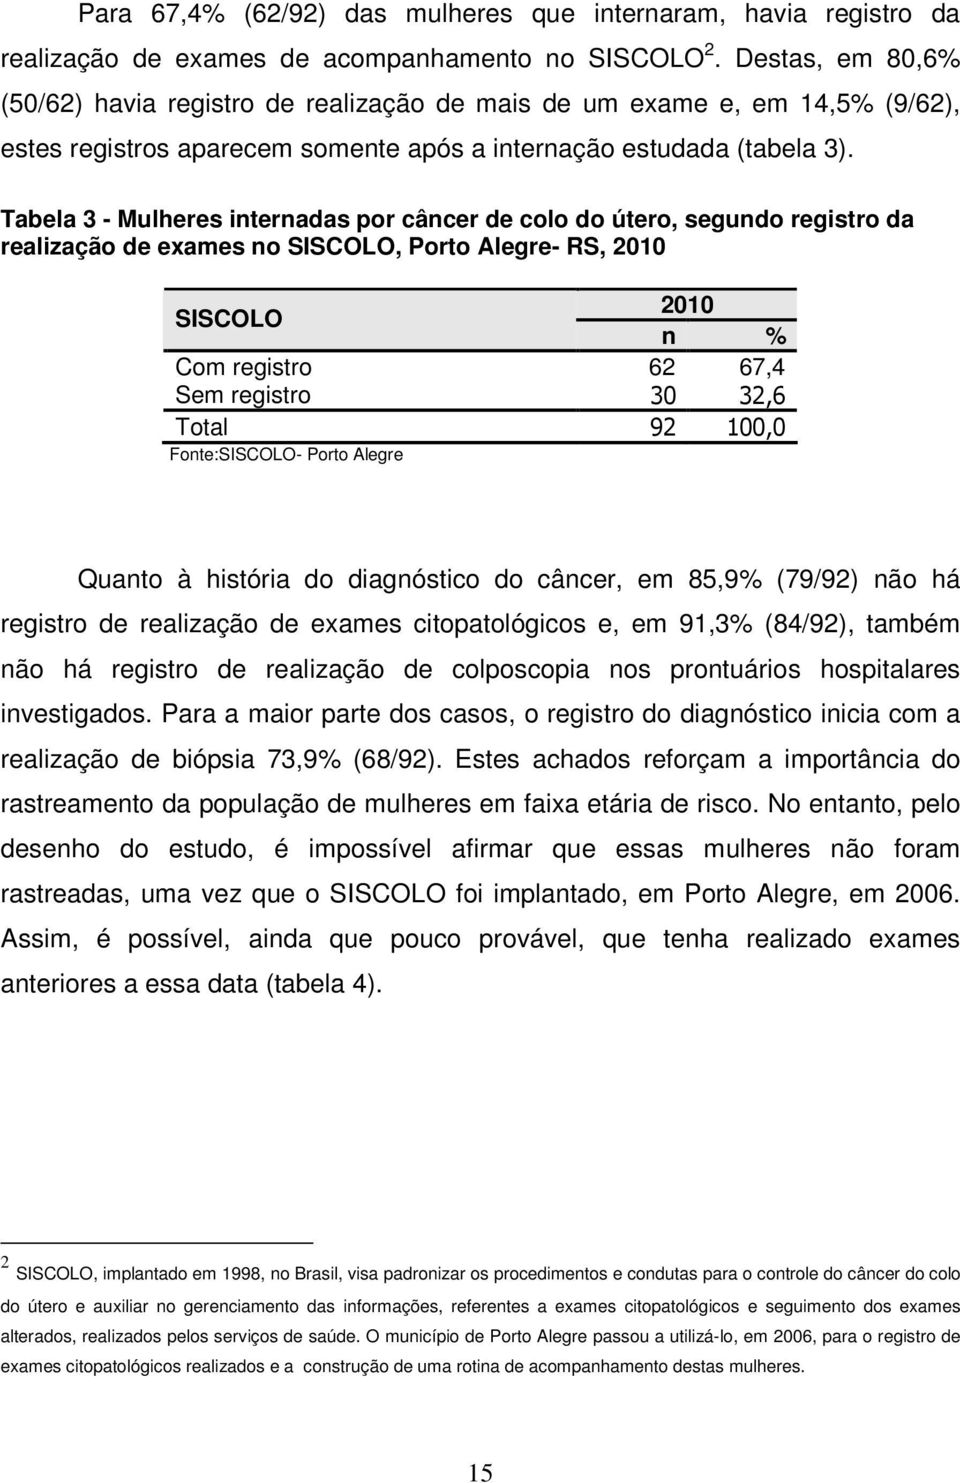 Tabela 3 - Mulheres internadas por câncer de colo do útero, segundo registro da realização de exames no SISCOLO, Porto Alegre- RS, 2010 SISCOLO 2010 n % Com registro 62 67,4 Sem registro 30 32,6